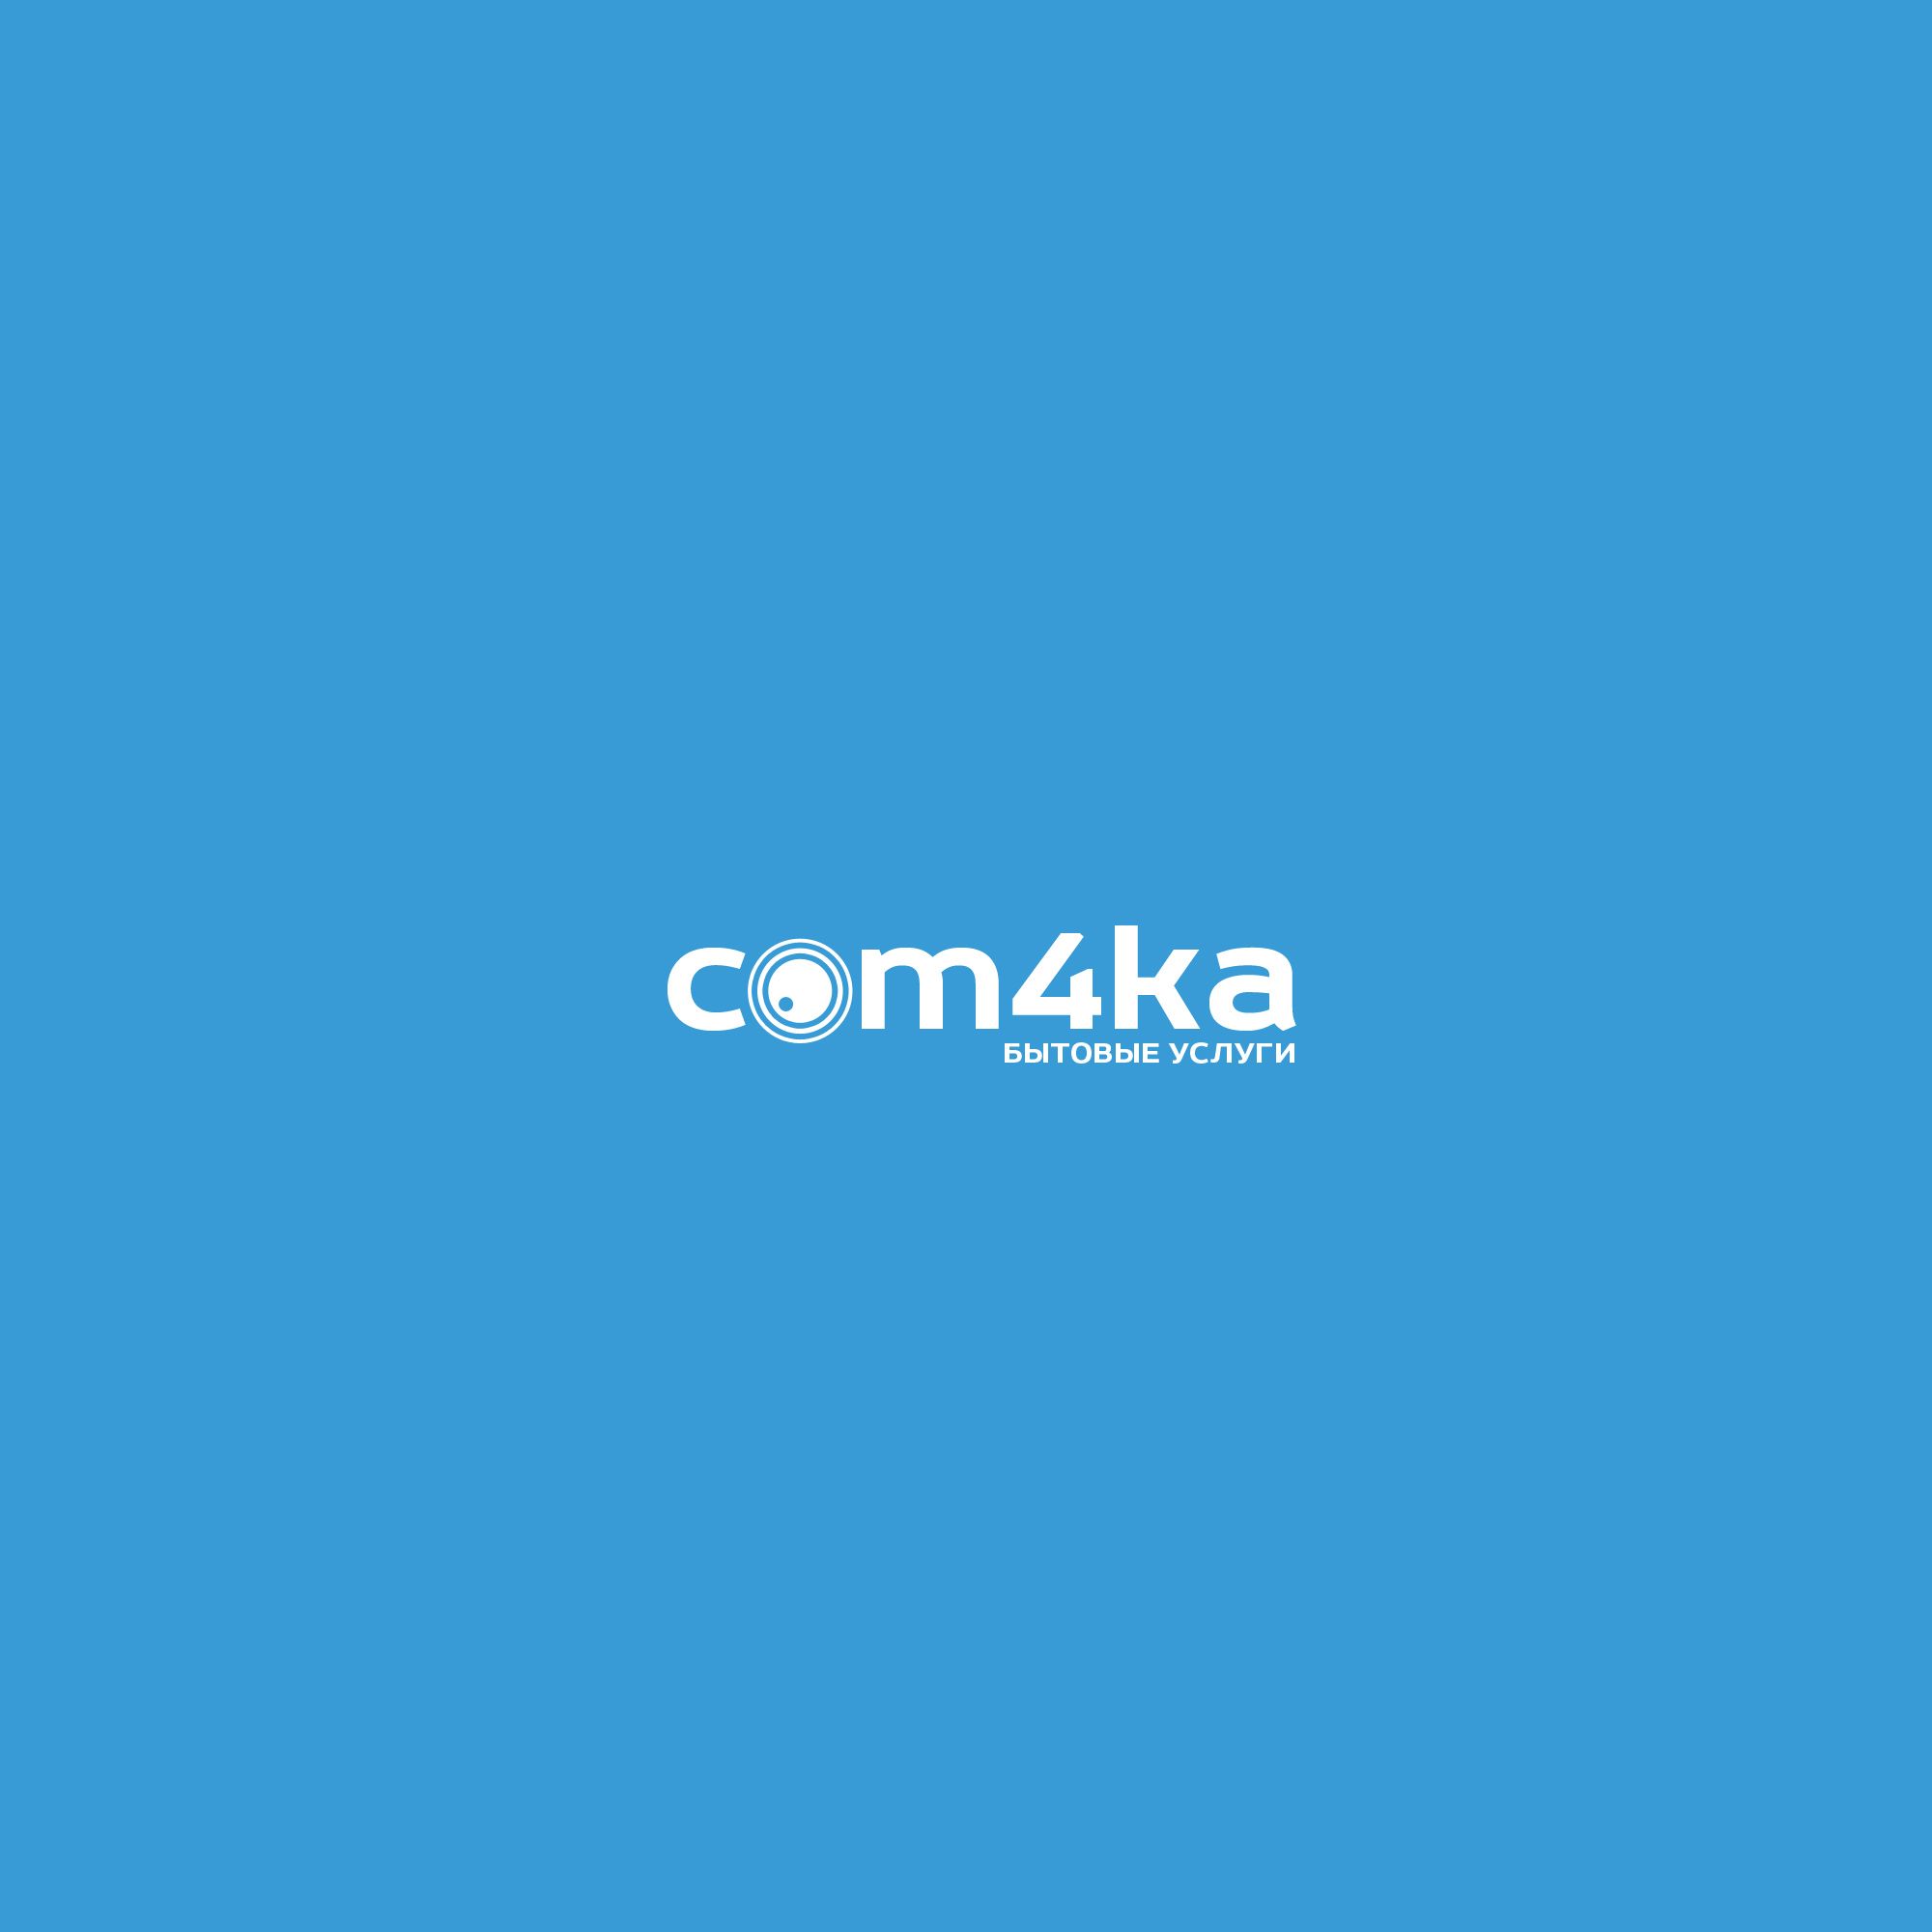 Логотип для интернет проекта com4ka.com - дизайнер weste32